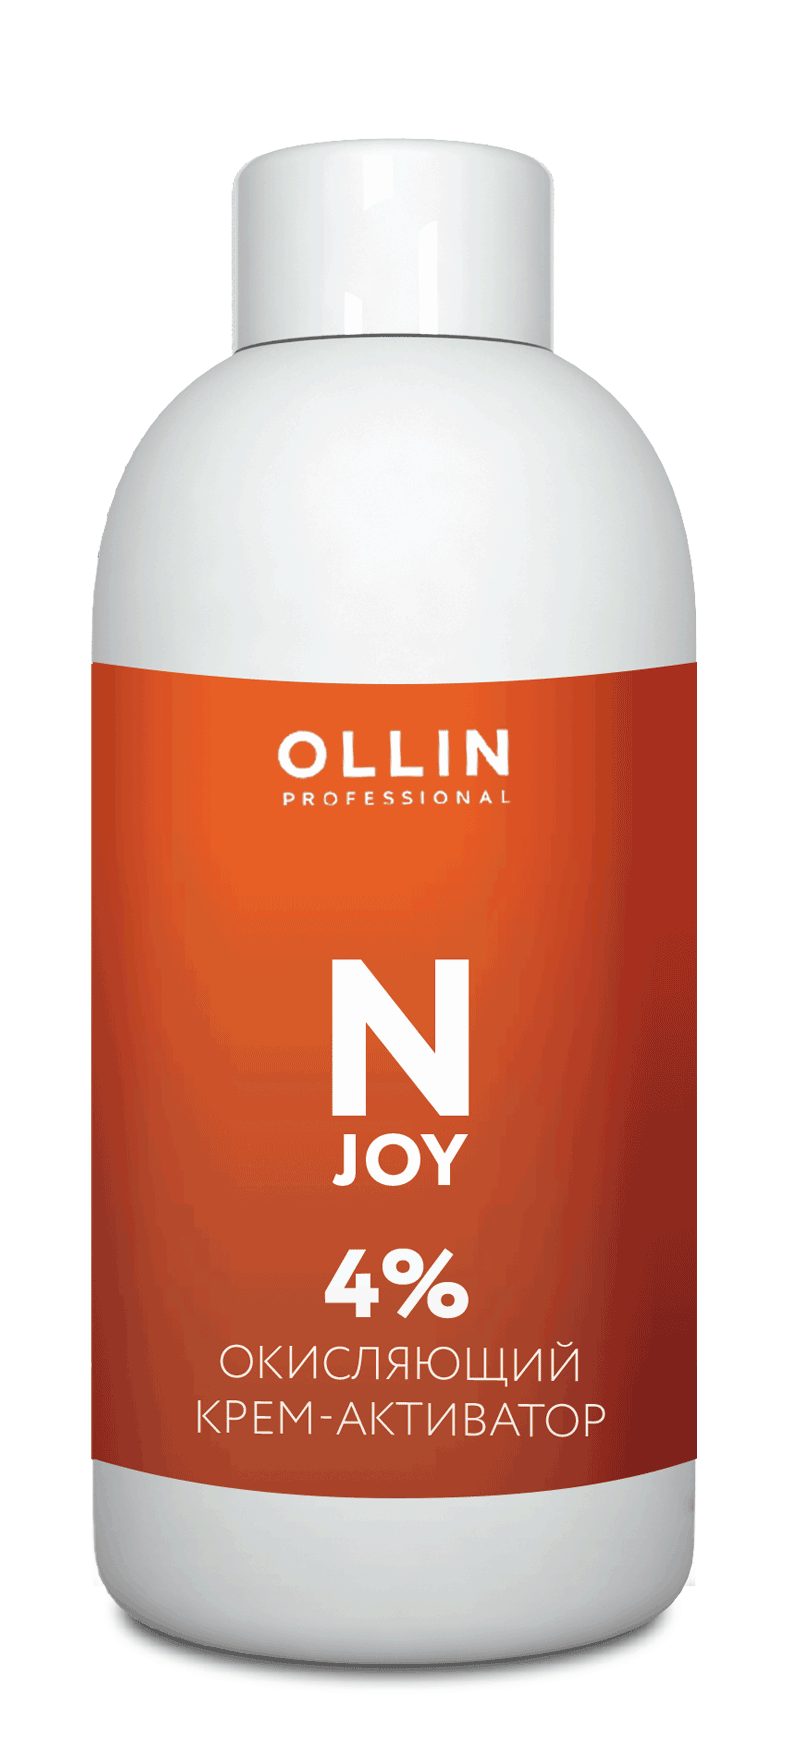 OLLIN N-JOY Окисляющий крем-активатор, 4% 1000мл